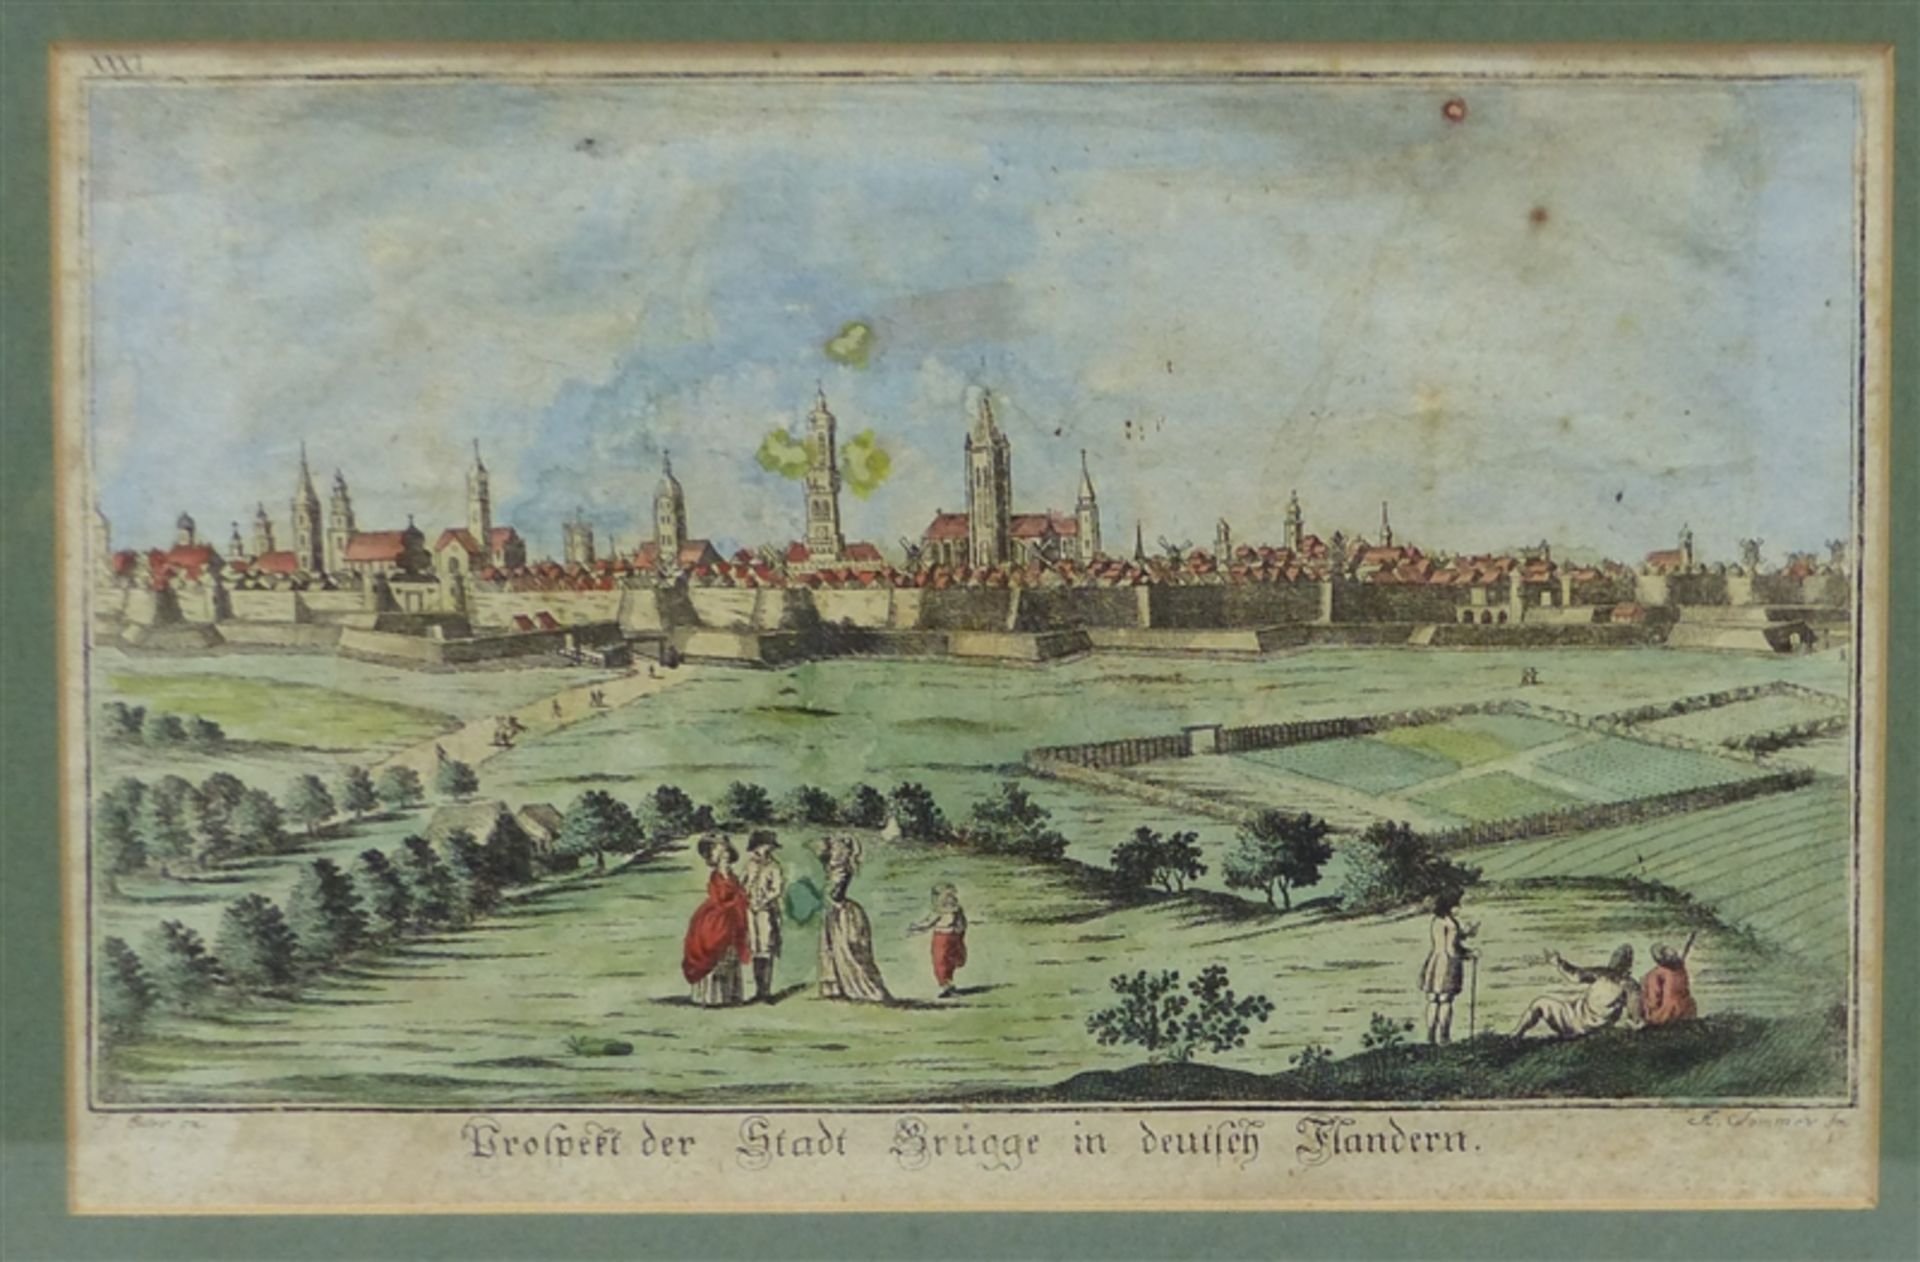 Kupferstich, um 1800 Prospekt der Stadt Brügge in Deutsch-Flandern, coloriert, beschädigt, 18x28 cm,